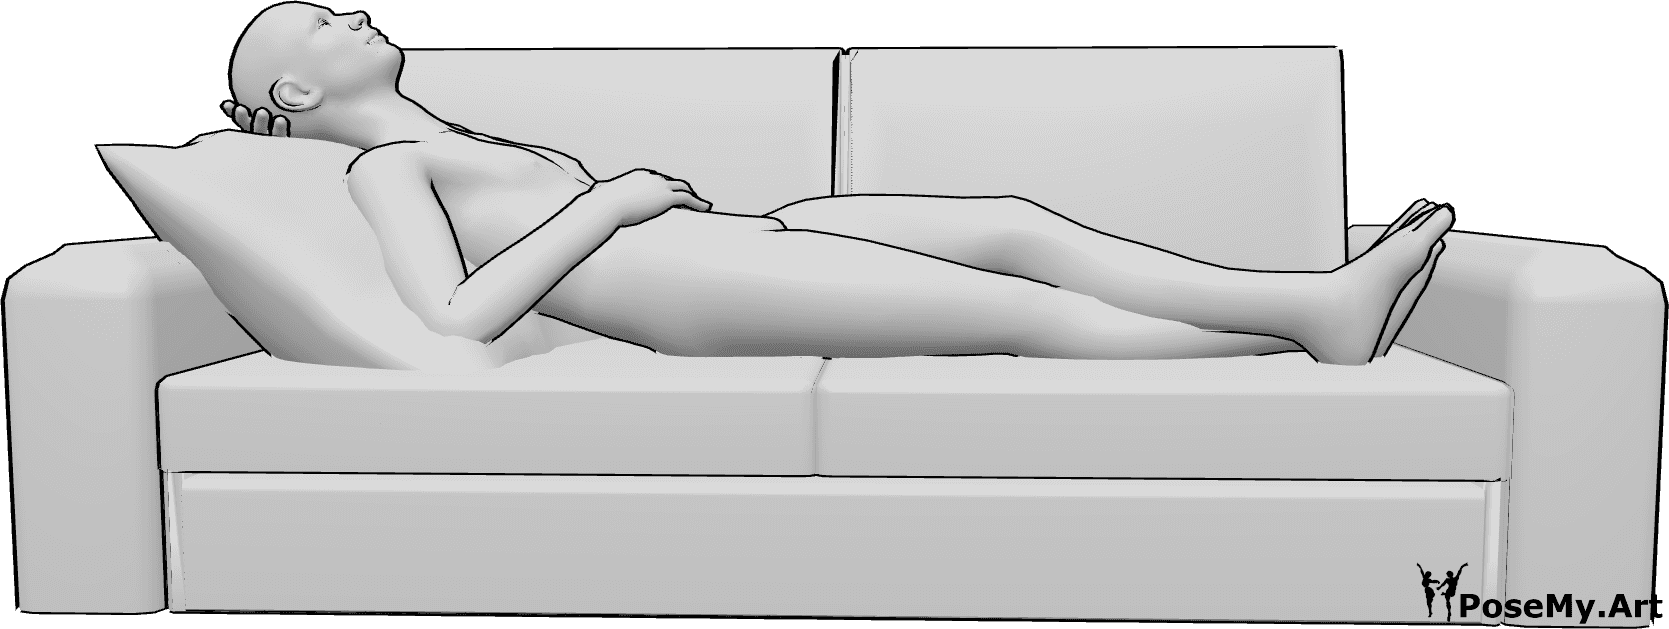 Référence des poses- Homme allongé au repos - L'homme est allongé sur le canapé et se repose, ses jambes sont croisées et il regarde vers le haut.